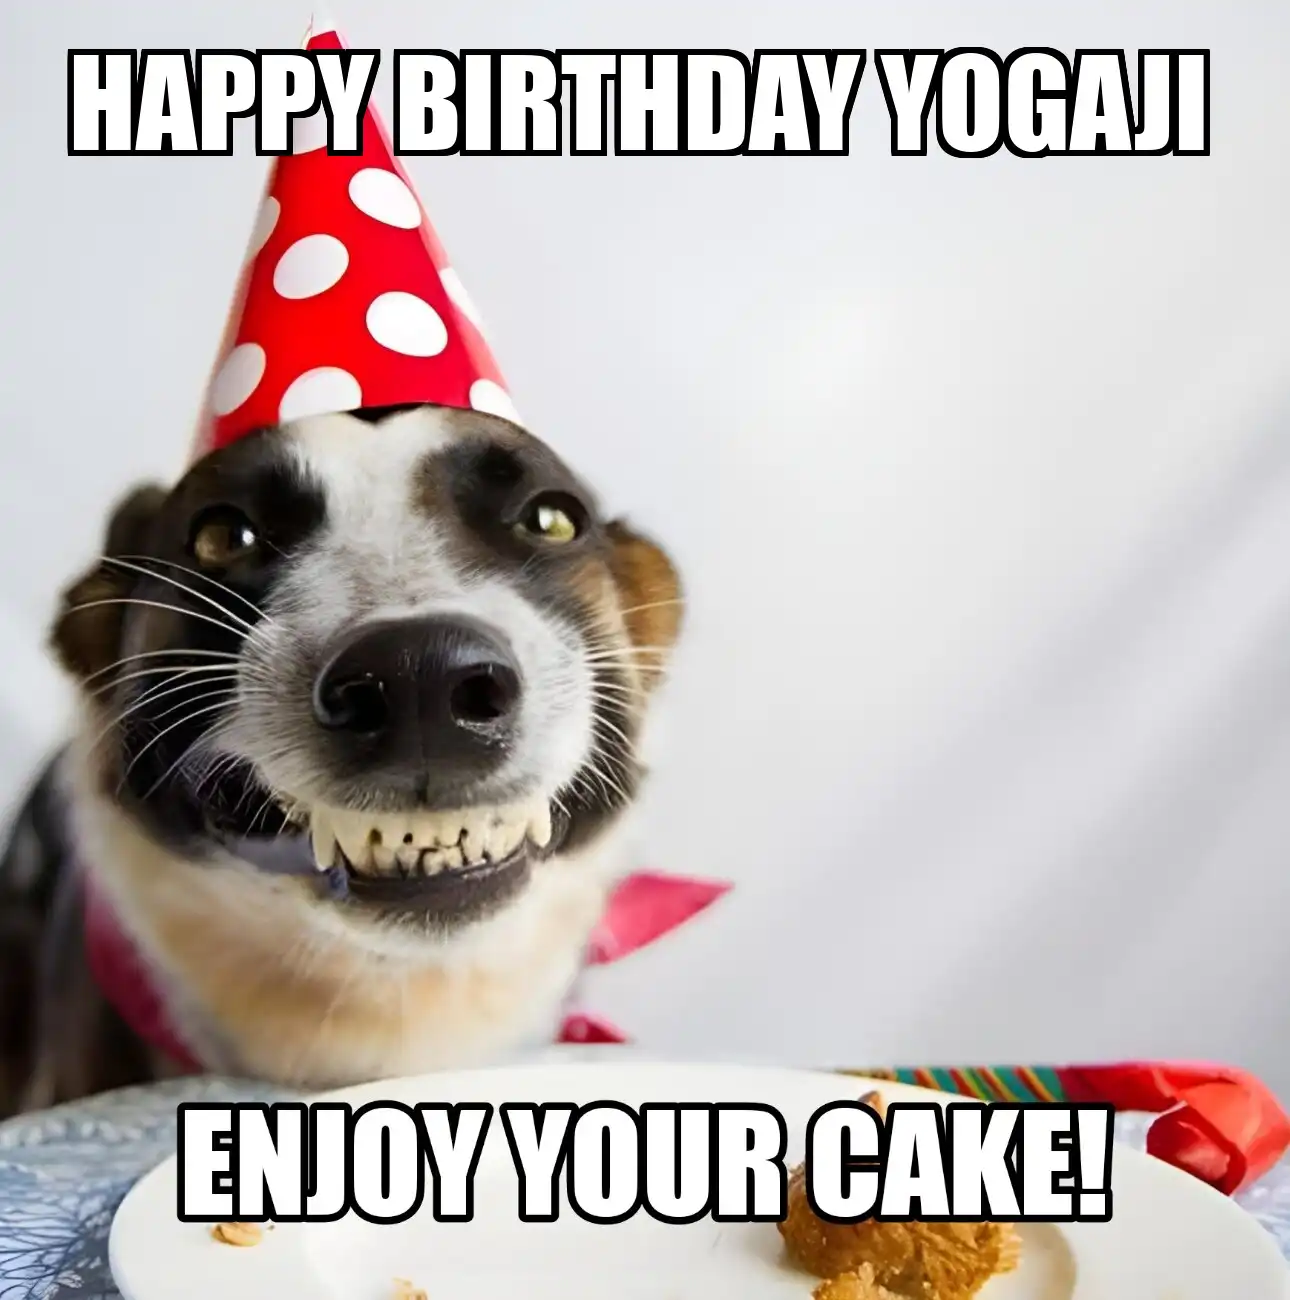 Happy Birthday Yogaji Enjoy Your Cake Dog Meme